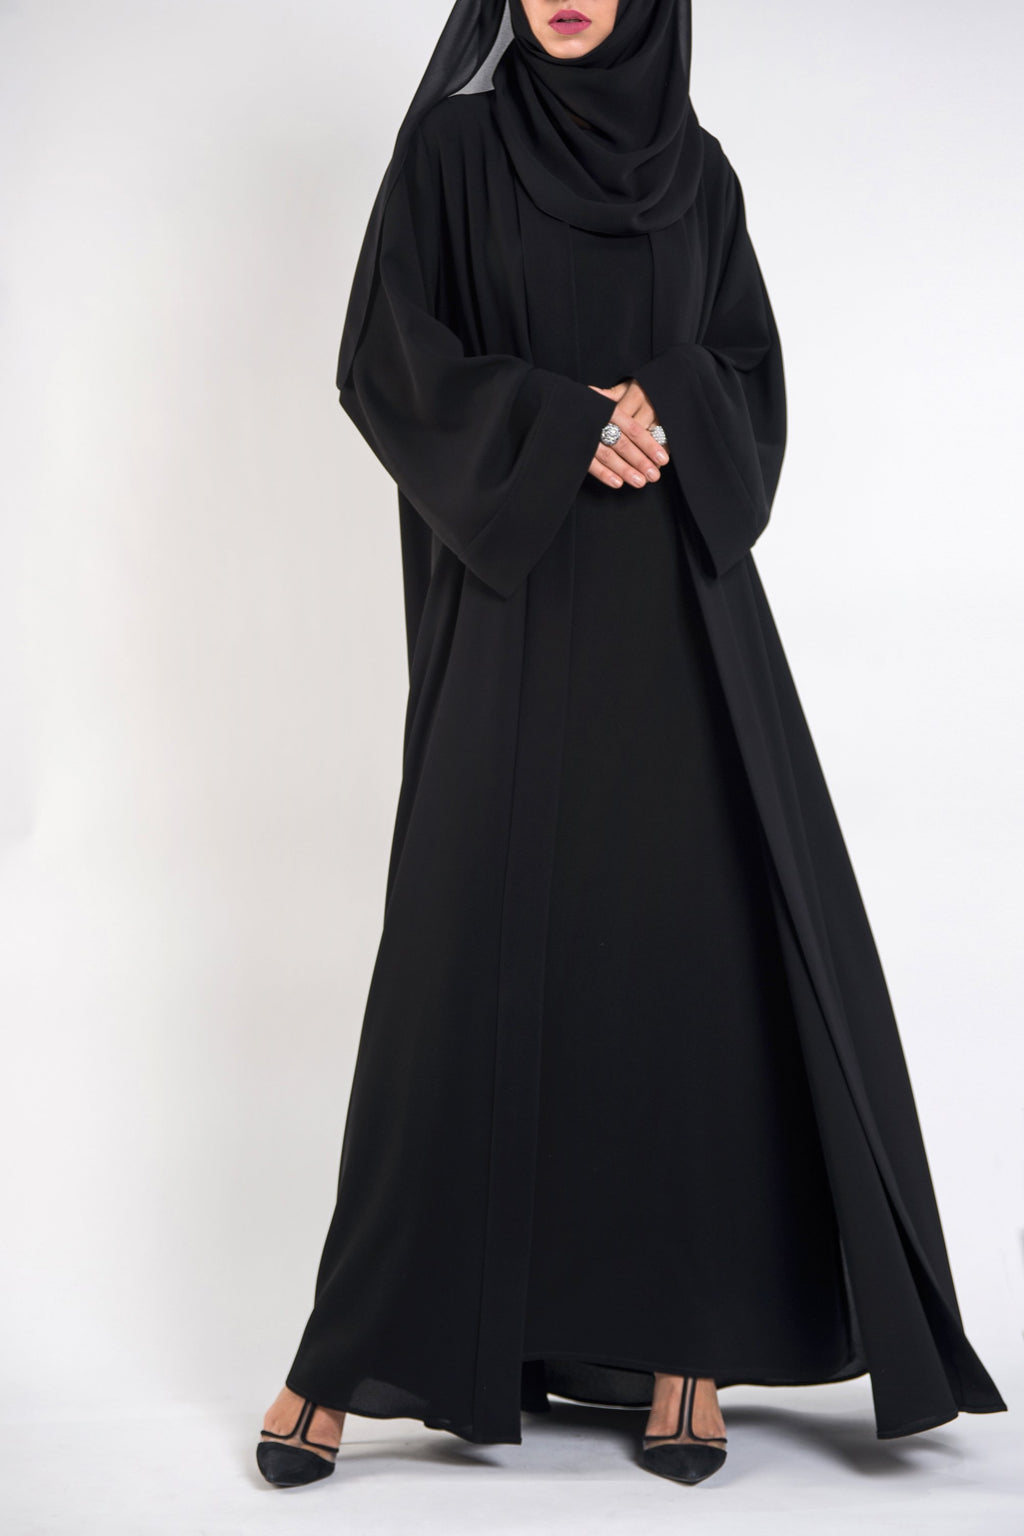 Elegant black abaya - thowby - dubai abayas with flare